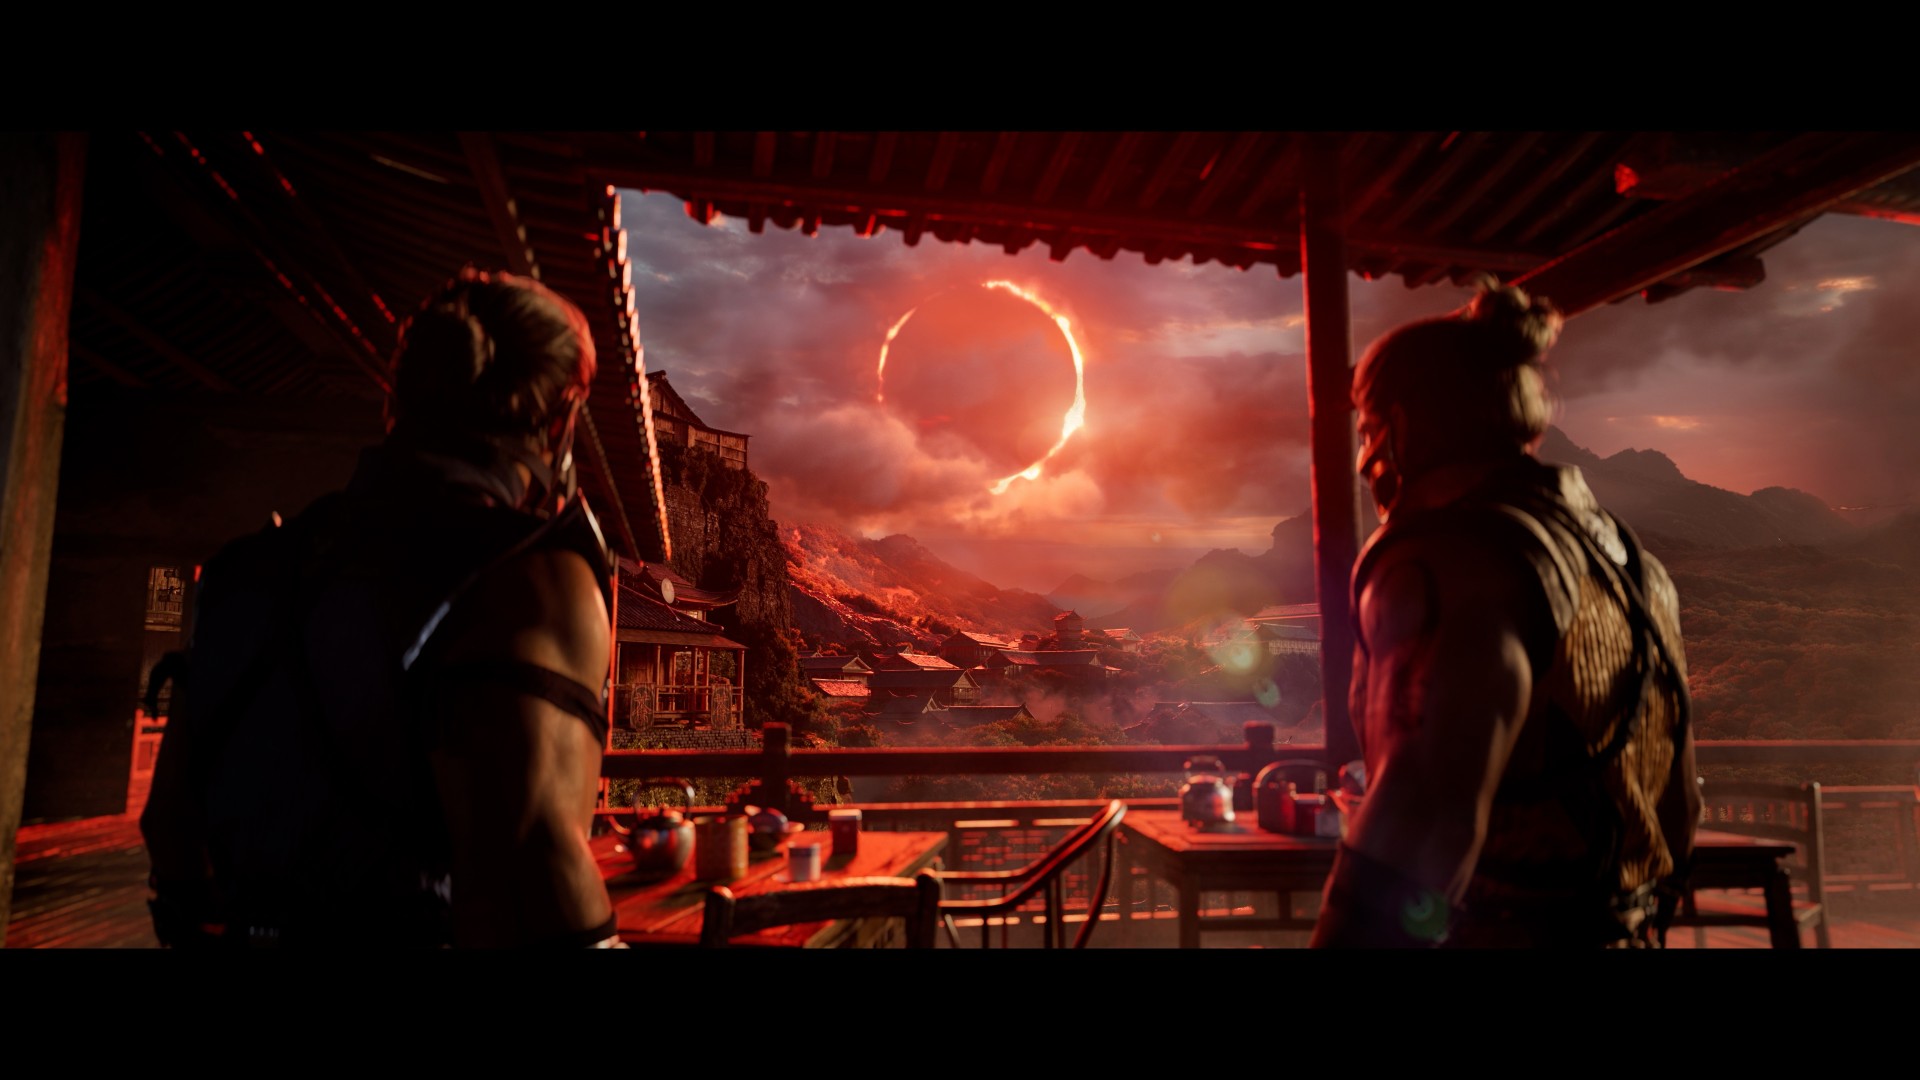 Mortal Kombat 1 Still Image From Trailer